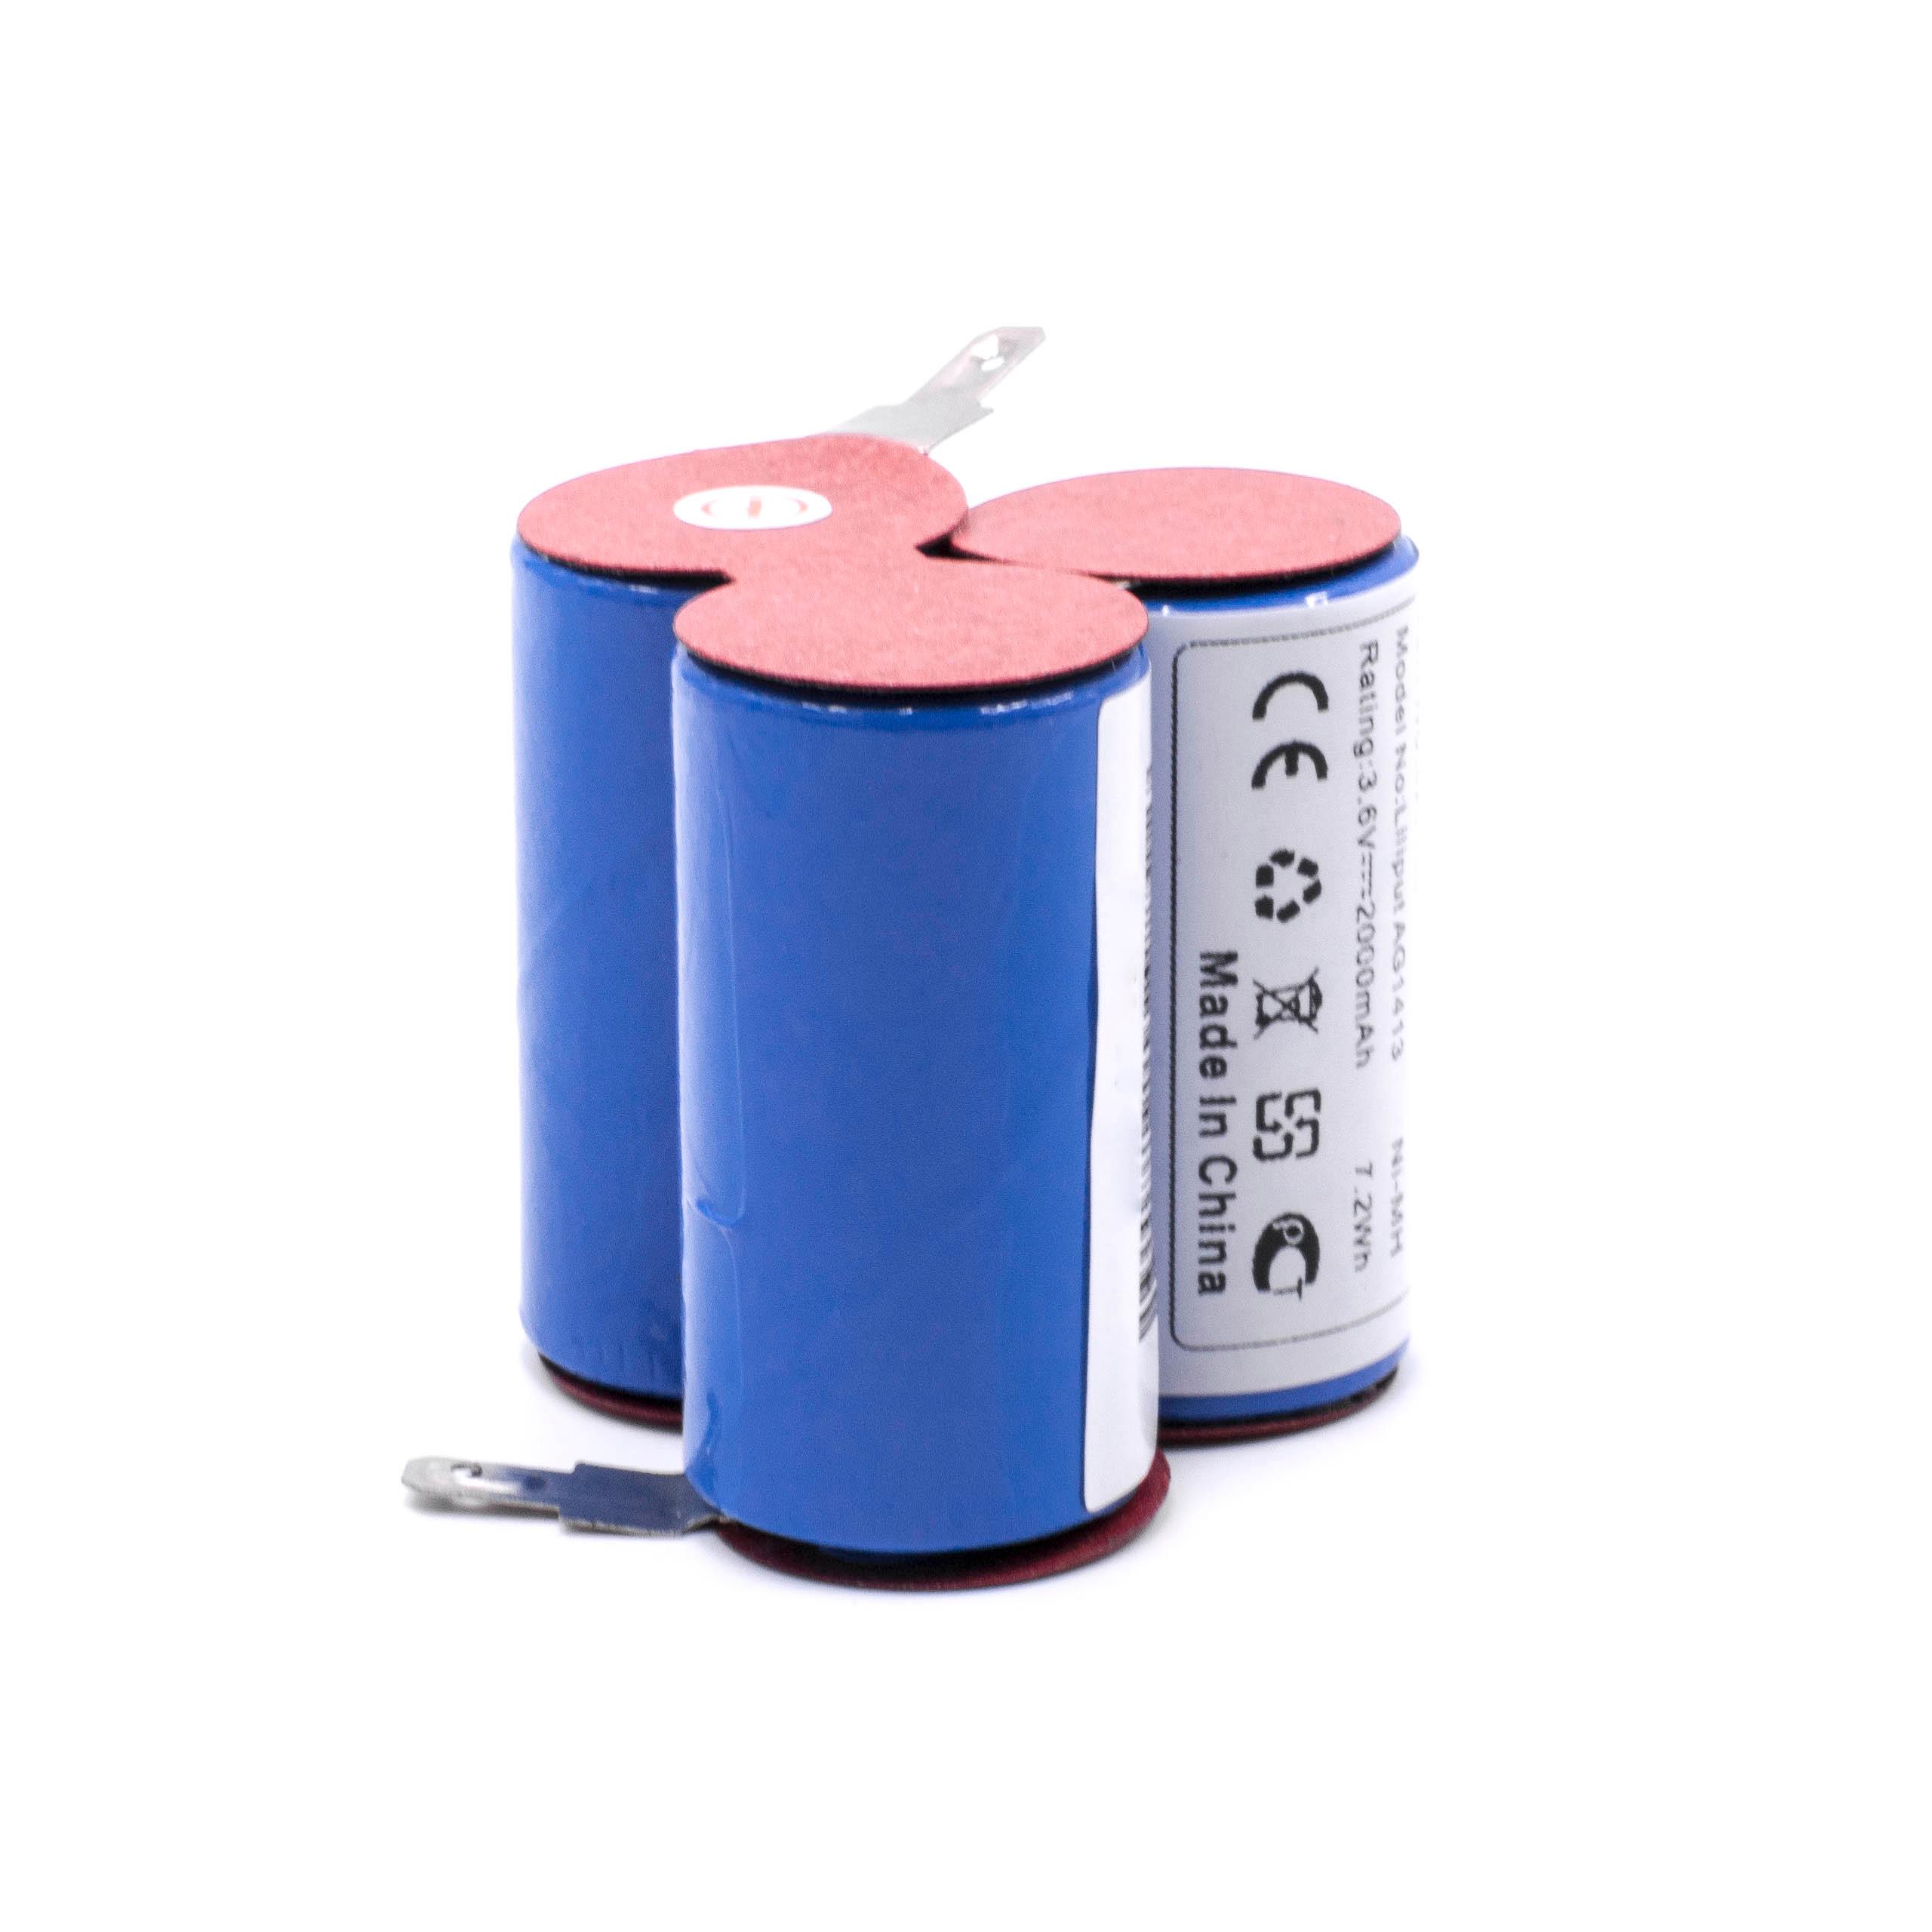 Batterie remplace AEG pour aspirateur - 2000mAh 3,6V NiMH